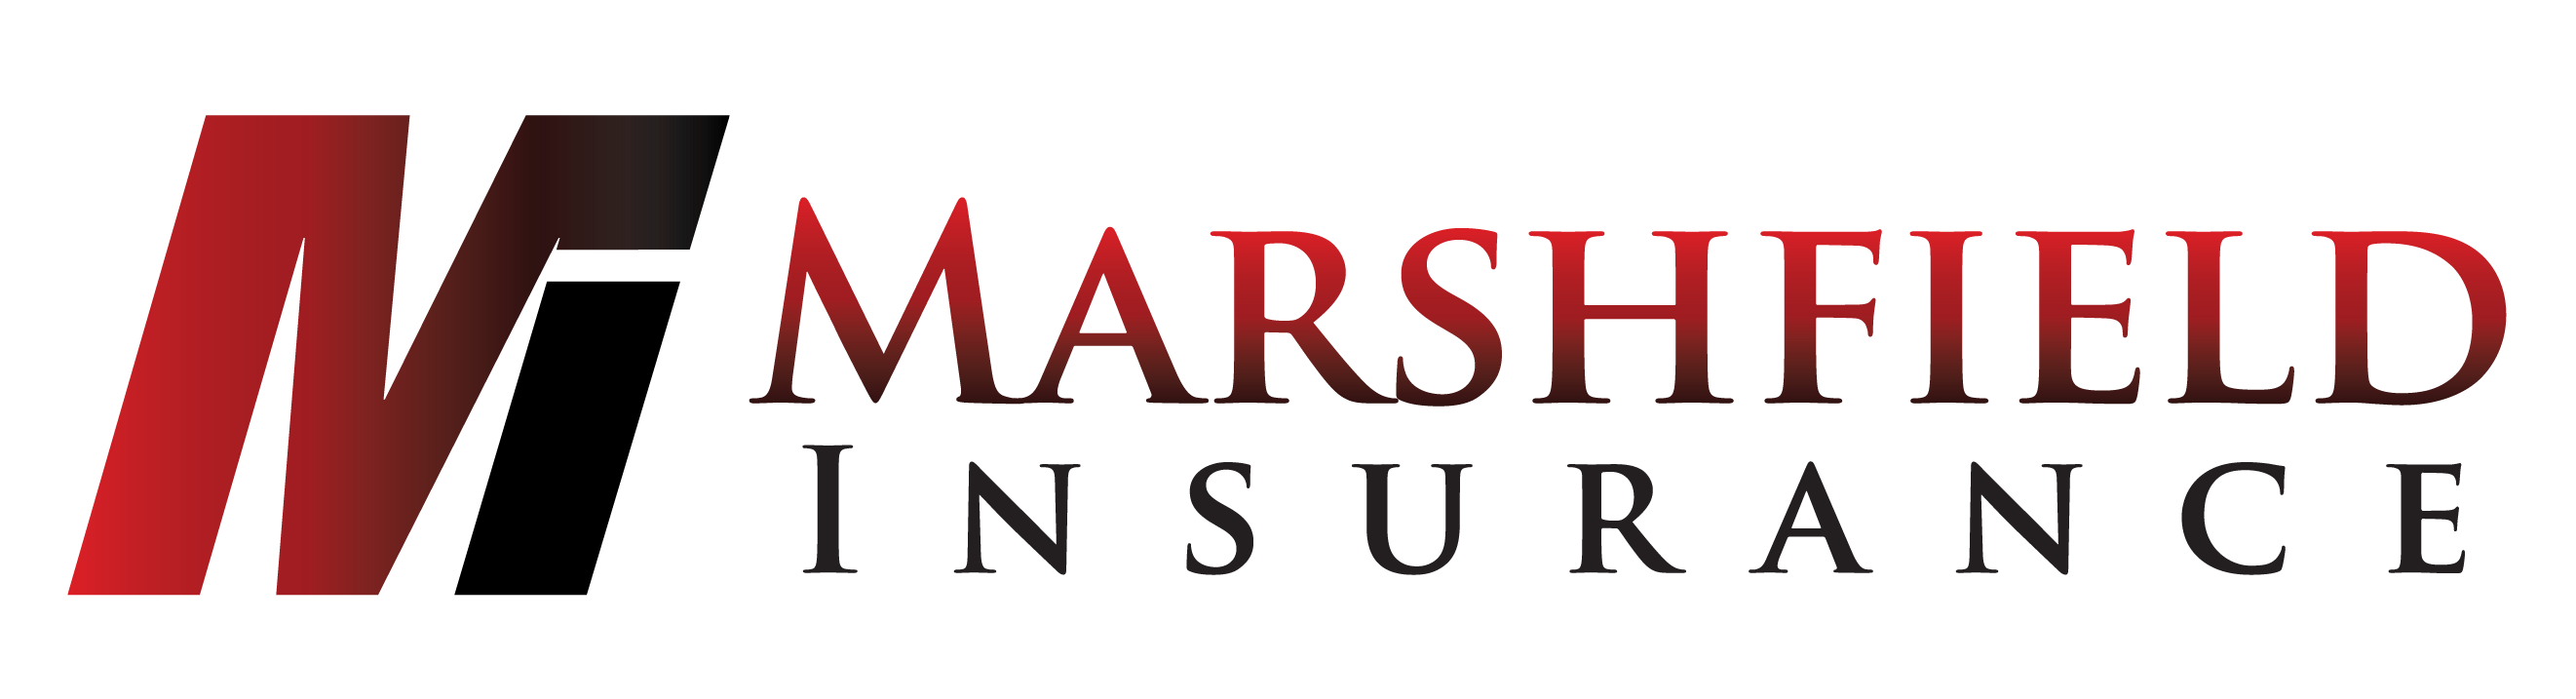 Visit http://www.marshfieldinsurance.net/